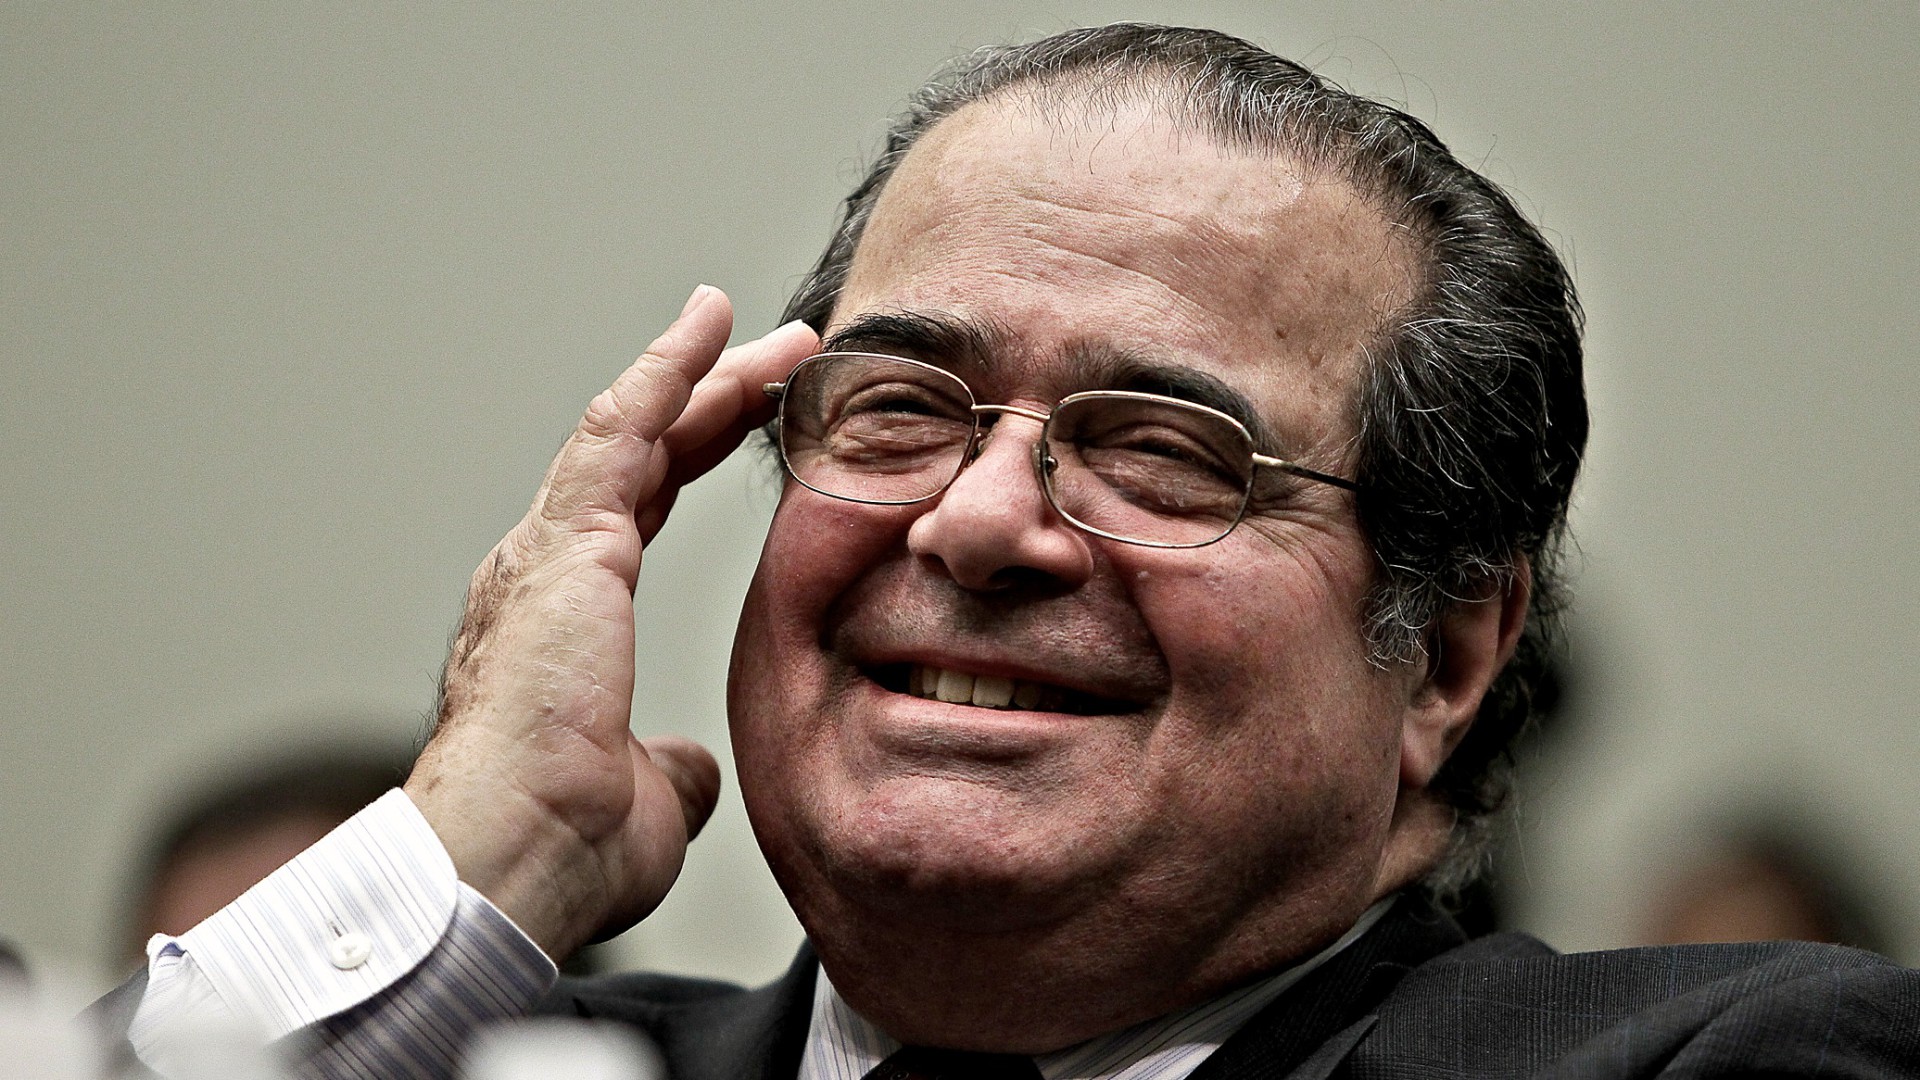 Antonin Scalia, défunt juge à la Cour suprême des Etats-Unis (Photo:Stephen Masker/Flickr/CC BY 2.0)